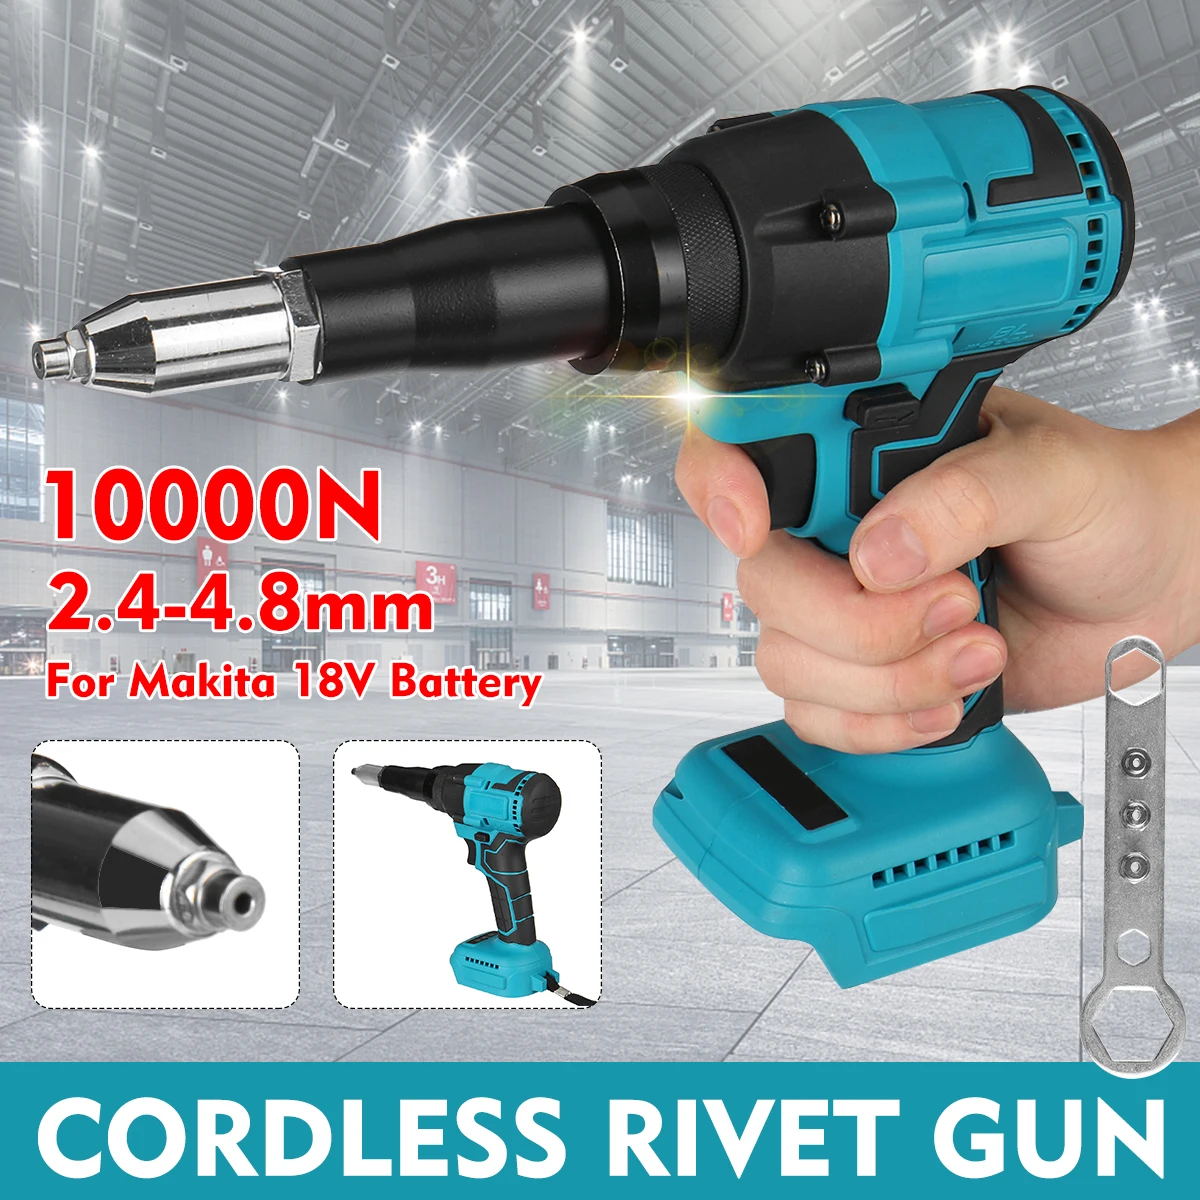 Cordless Electric Rivet Gun 2.4-4.8mm With LED Light Rivet Nut Gun Drill Insert Nut Pull Riveting Tool For Makita 18V Battery